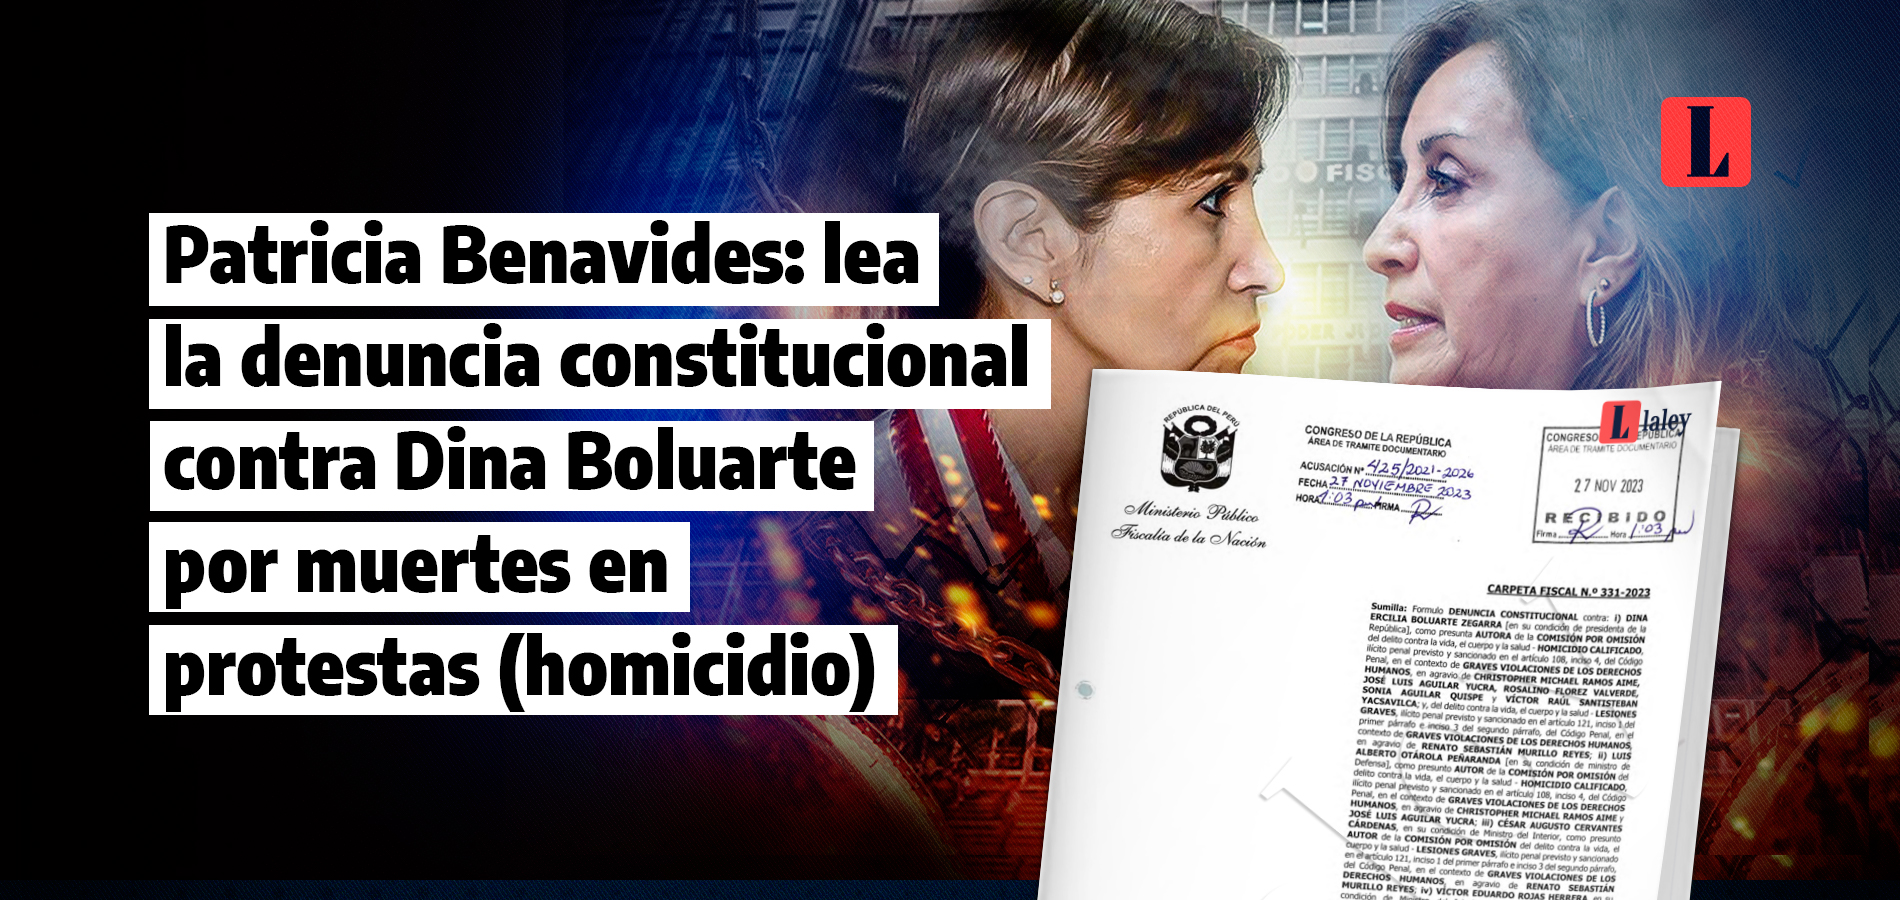 Patricia Benavides lea la denuncia constitucional contra Dina Boluarte por muertes en protestas homicidio laley.pe